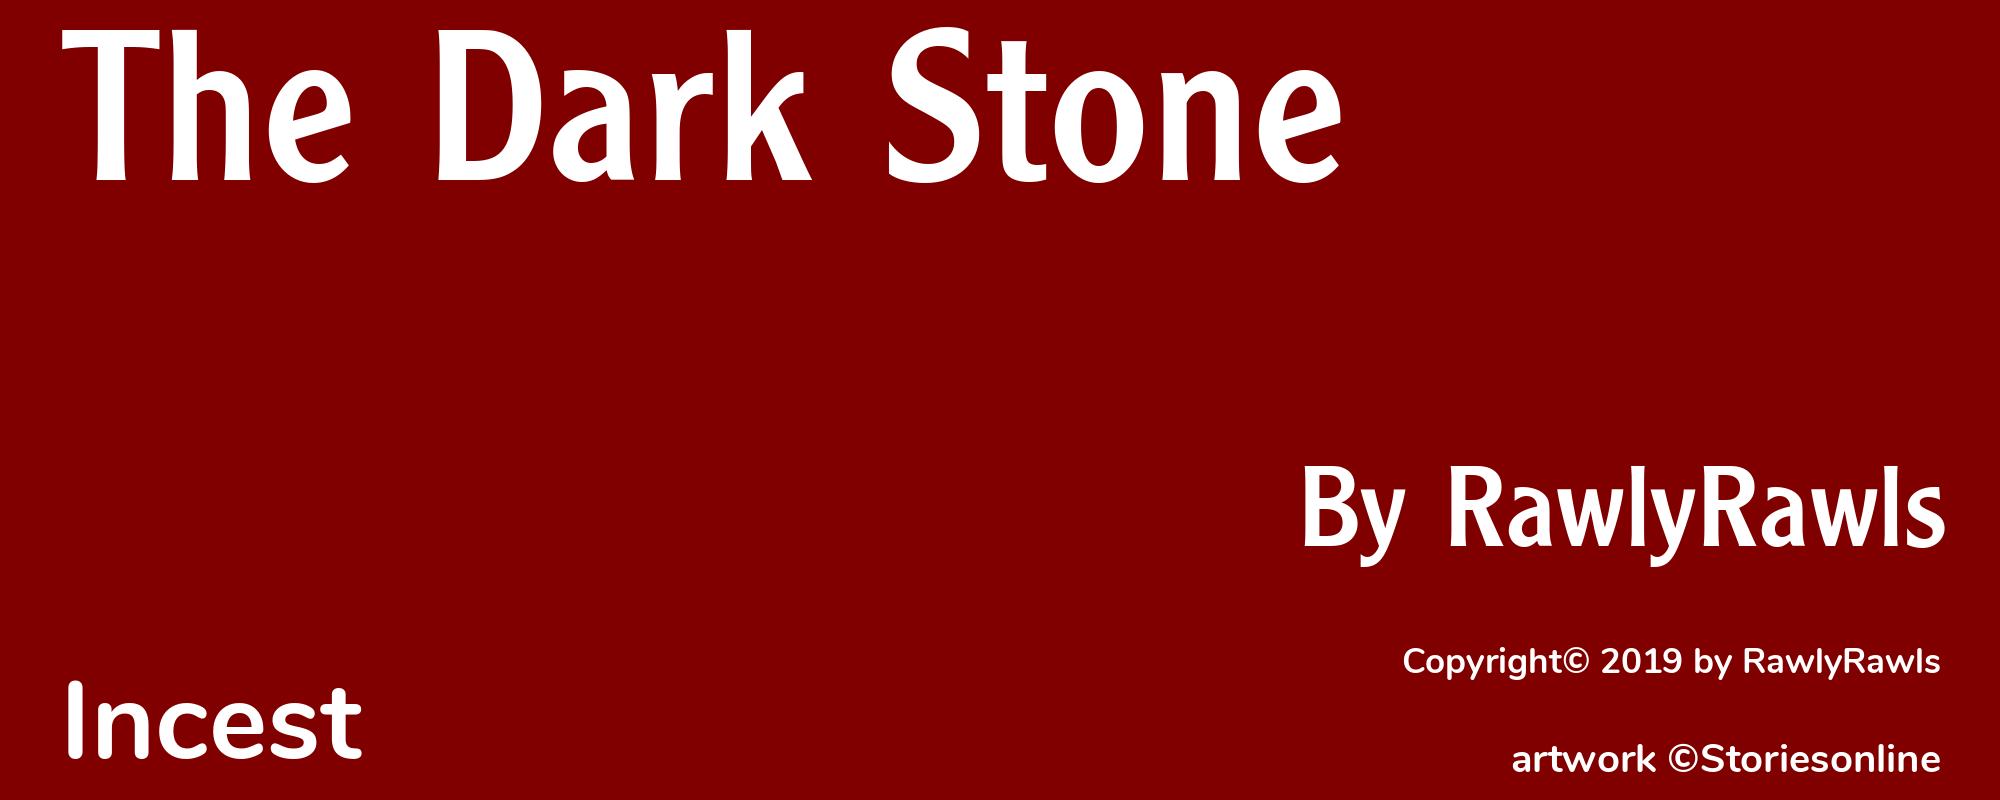 The Dark Stone - Cover